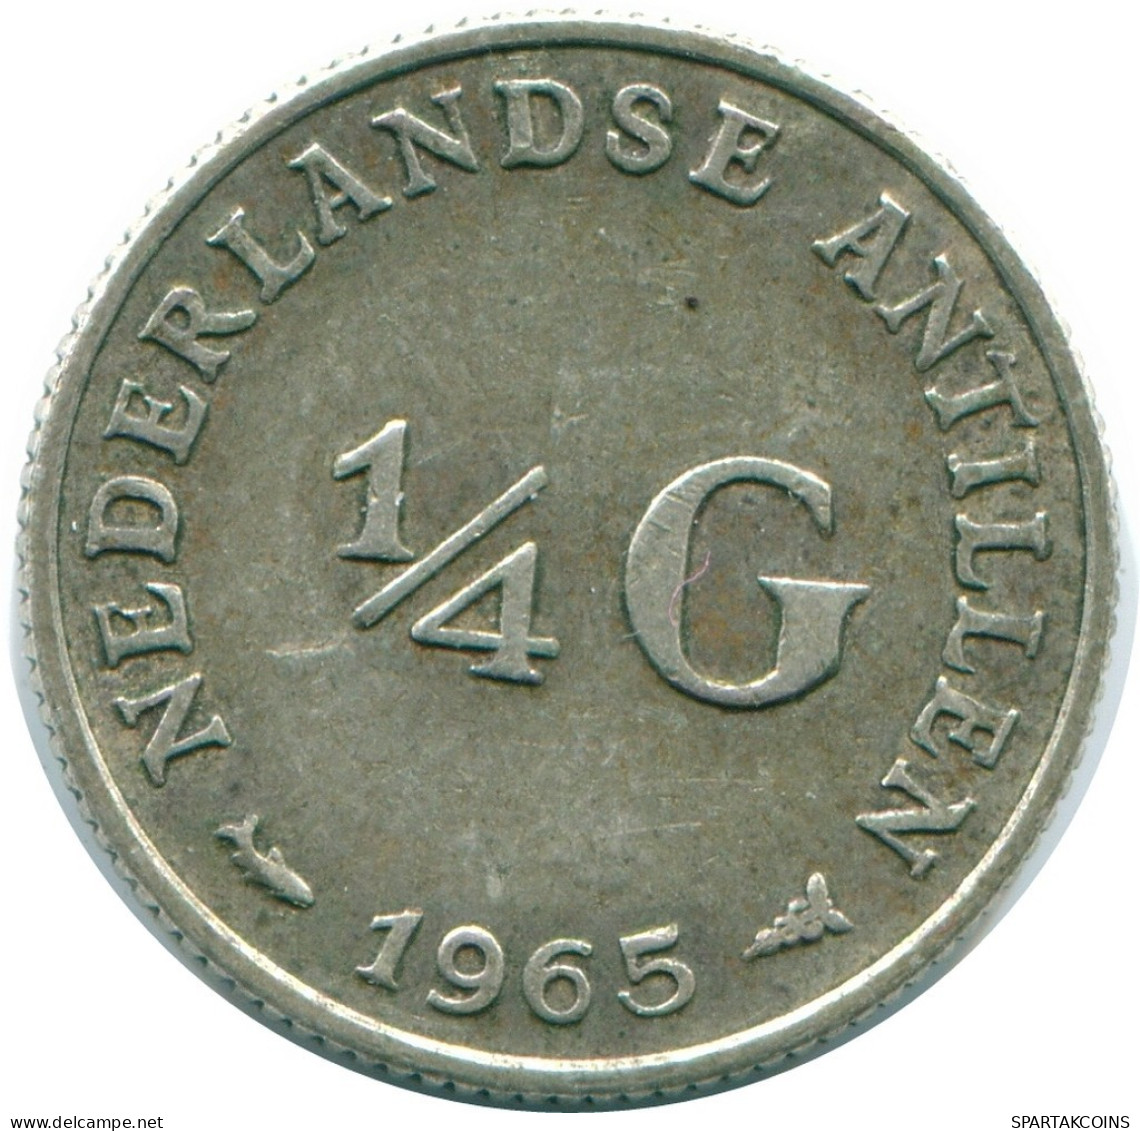 1/4 GULDEN 1965 NIEDERLÄNDISCHE ANTILLEN SILBER Koloniale Münze #NL11382.4.D.A - Nederlandse Antillen